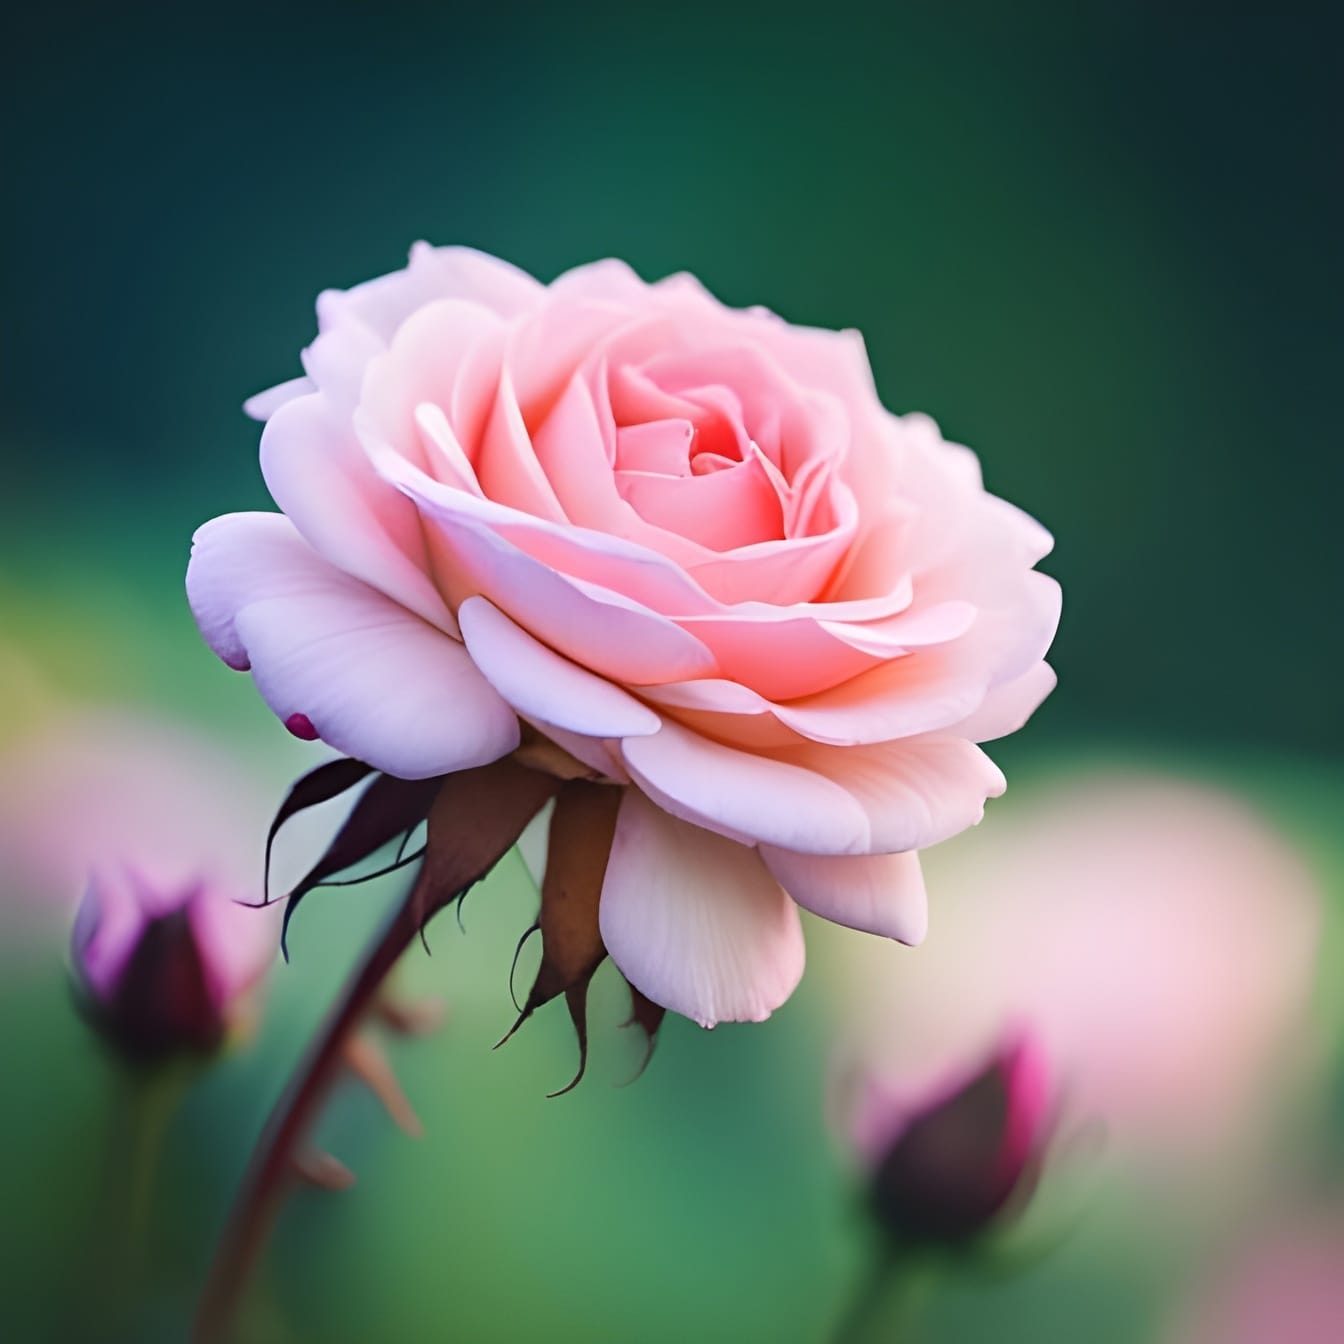 Enkele roze roos met felroze bloemblaadjes – kunst van kunstmatige intelligentie